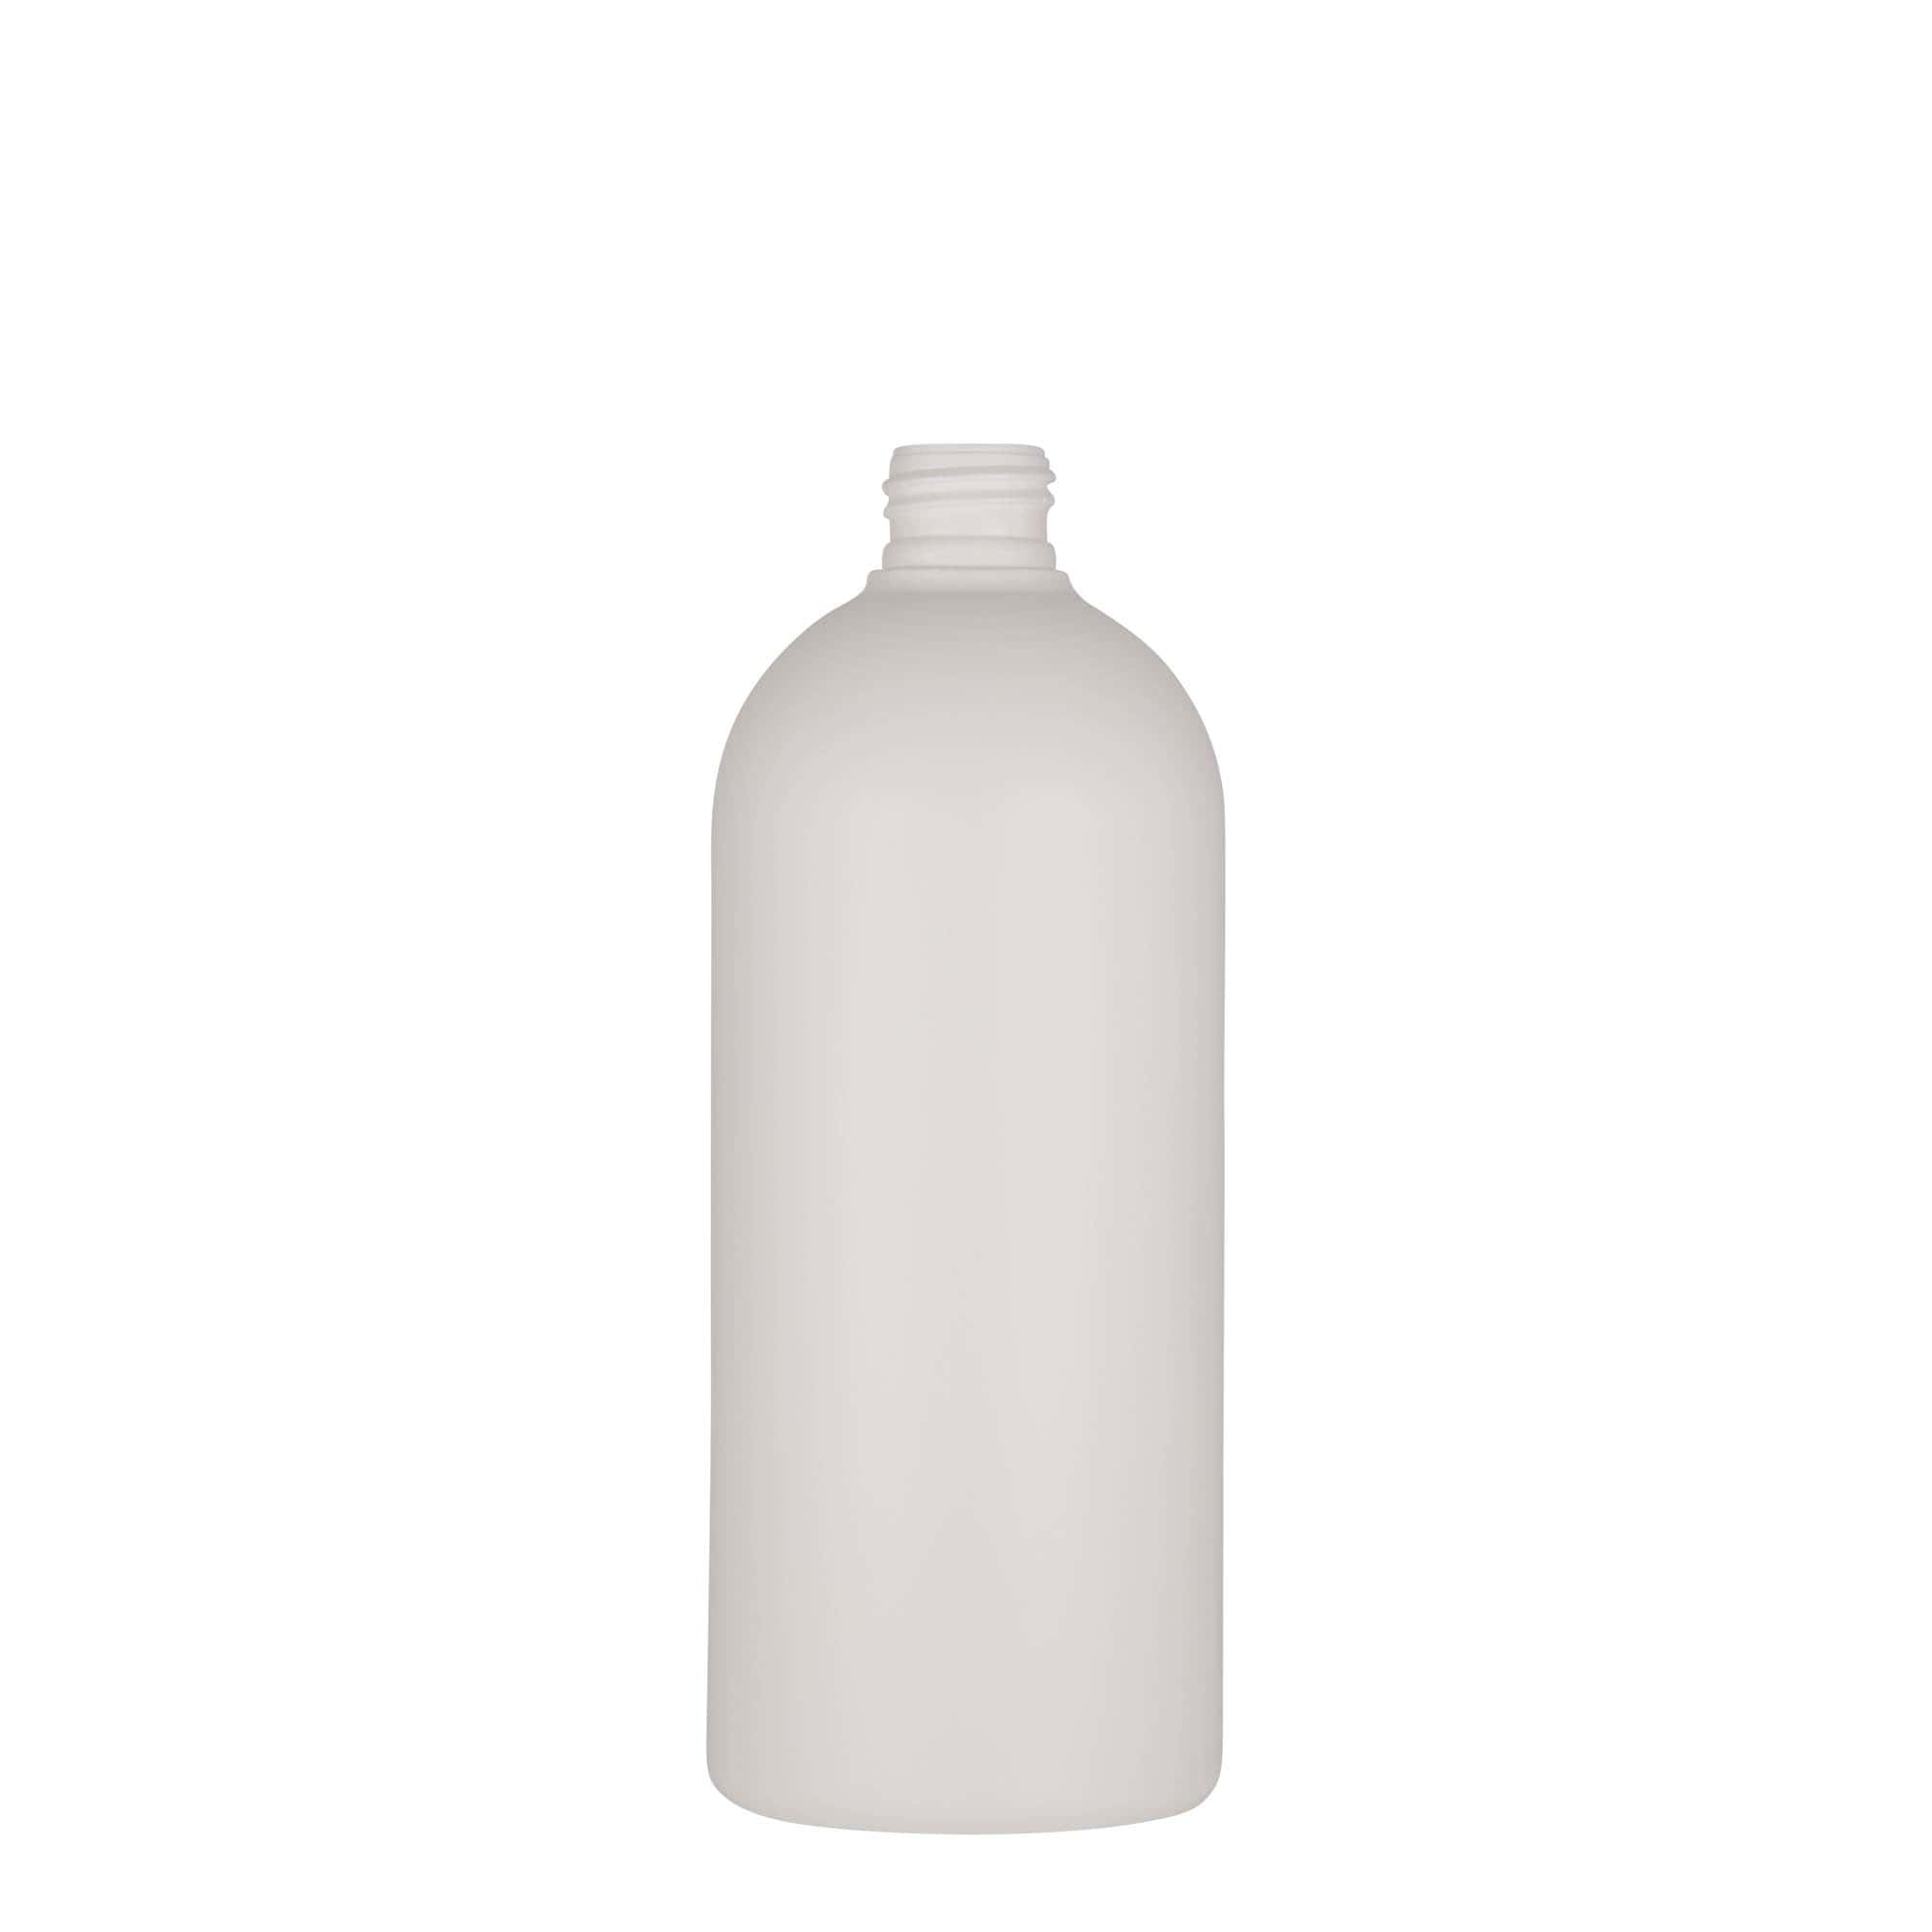 500 ml plastic bottle 'Tuffy', HDPE, white, closure: GPI 24/410